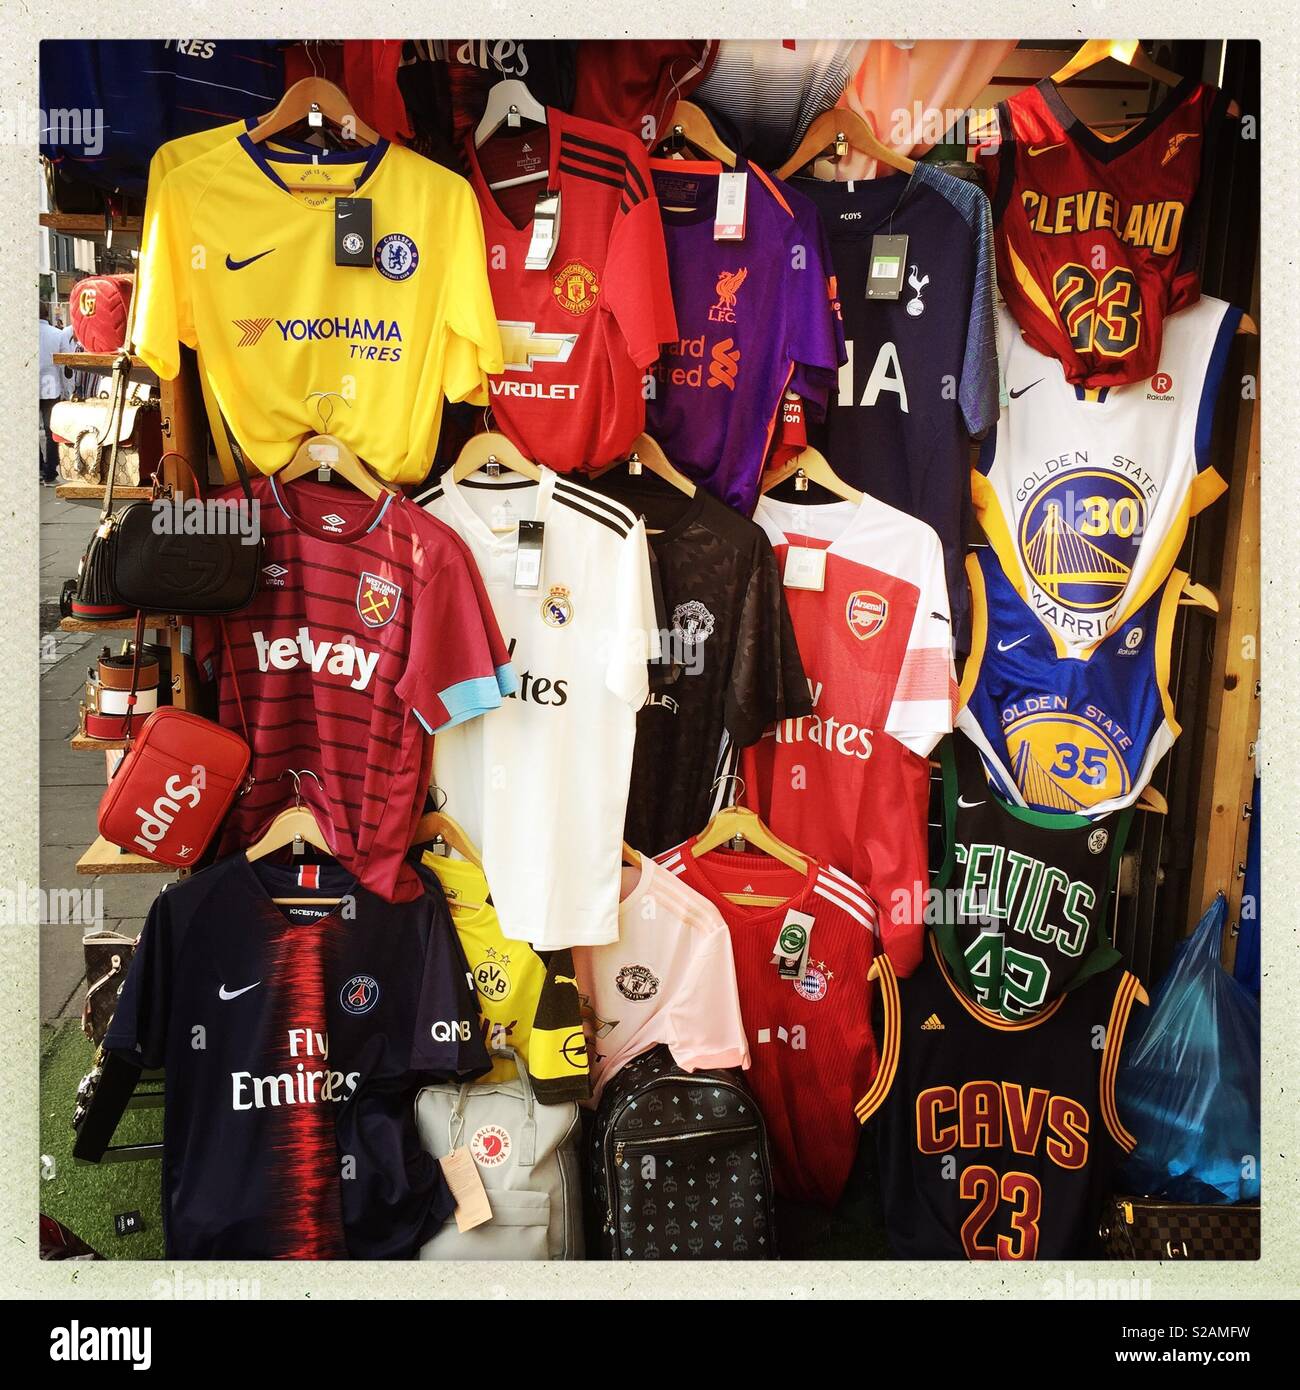 Market stall selling football shirts Stock Photo - Alamy